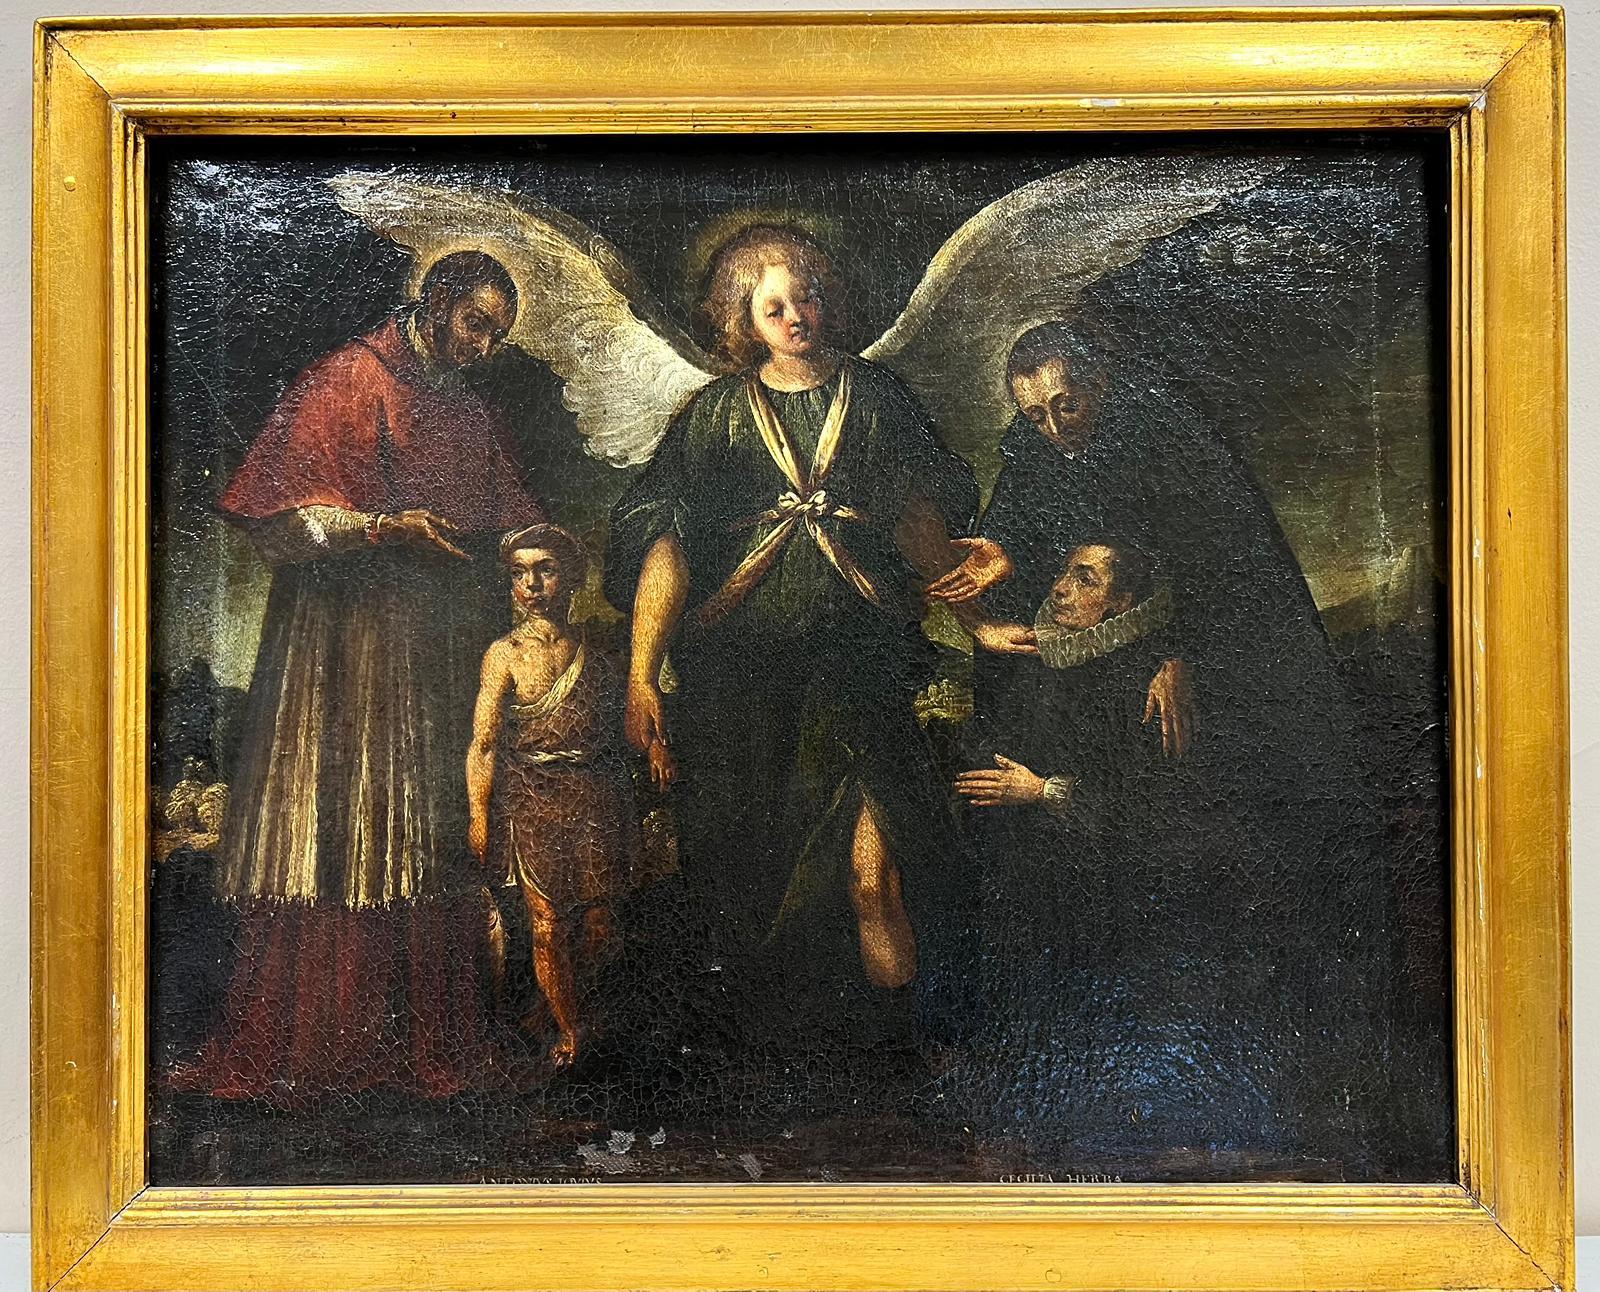 Feines italienisches Ölgemälde eines alten Meisters, Angel & Saints, Figuren aufgreifend, Ölgemälde – Painting von Italian Old Master 18th Century